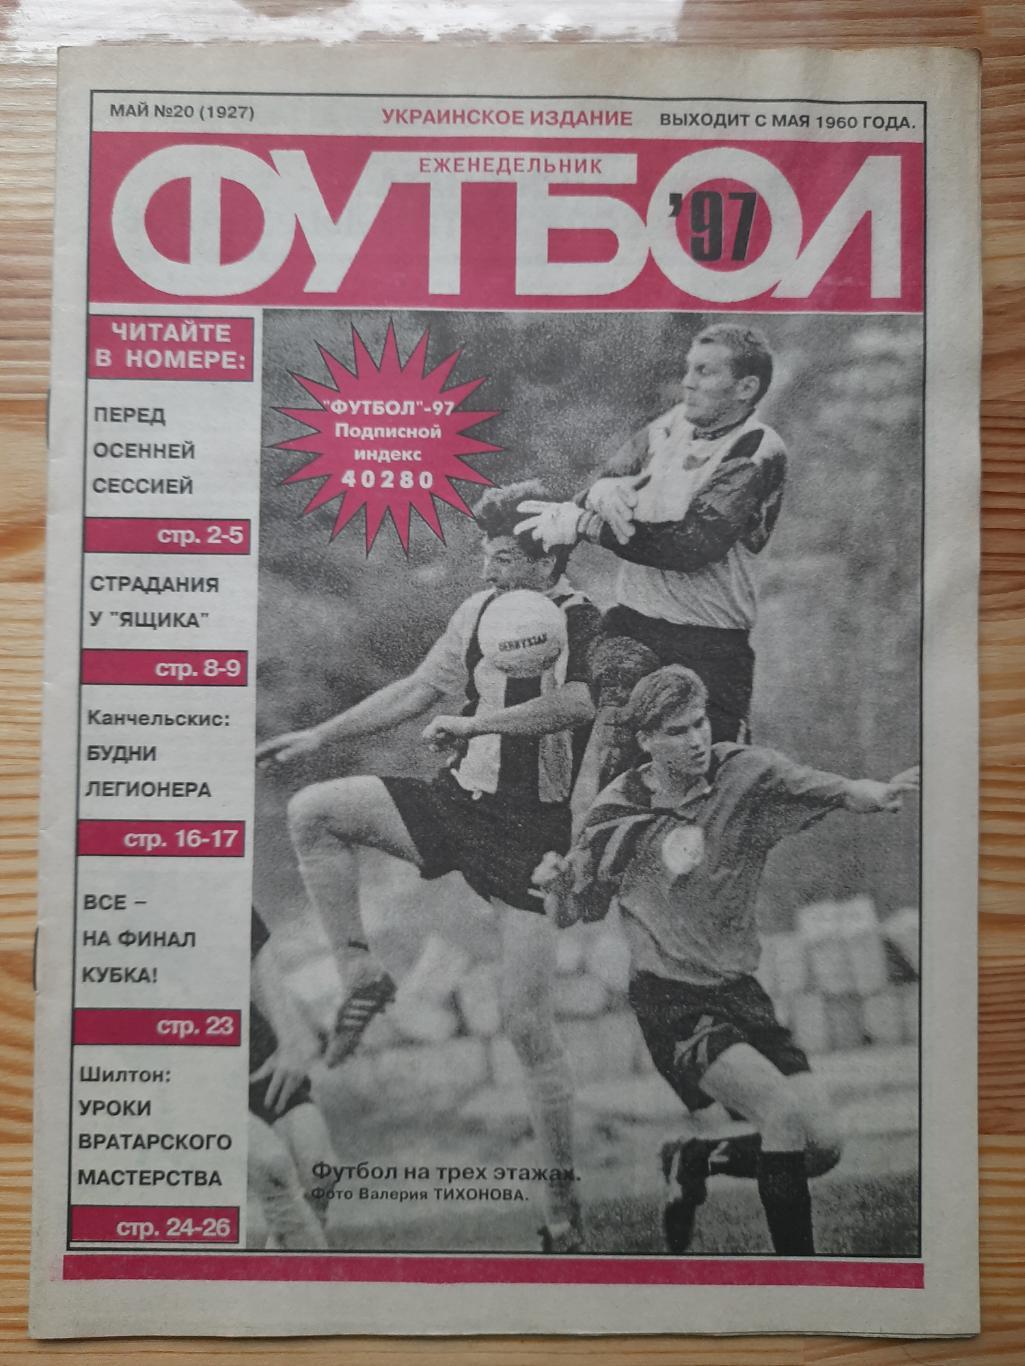 еженедельник Футбол #20 1997